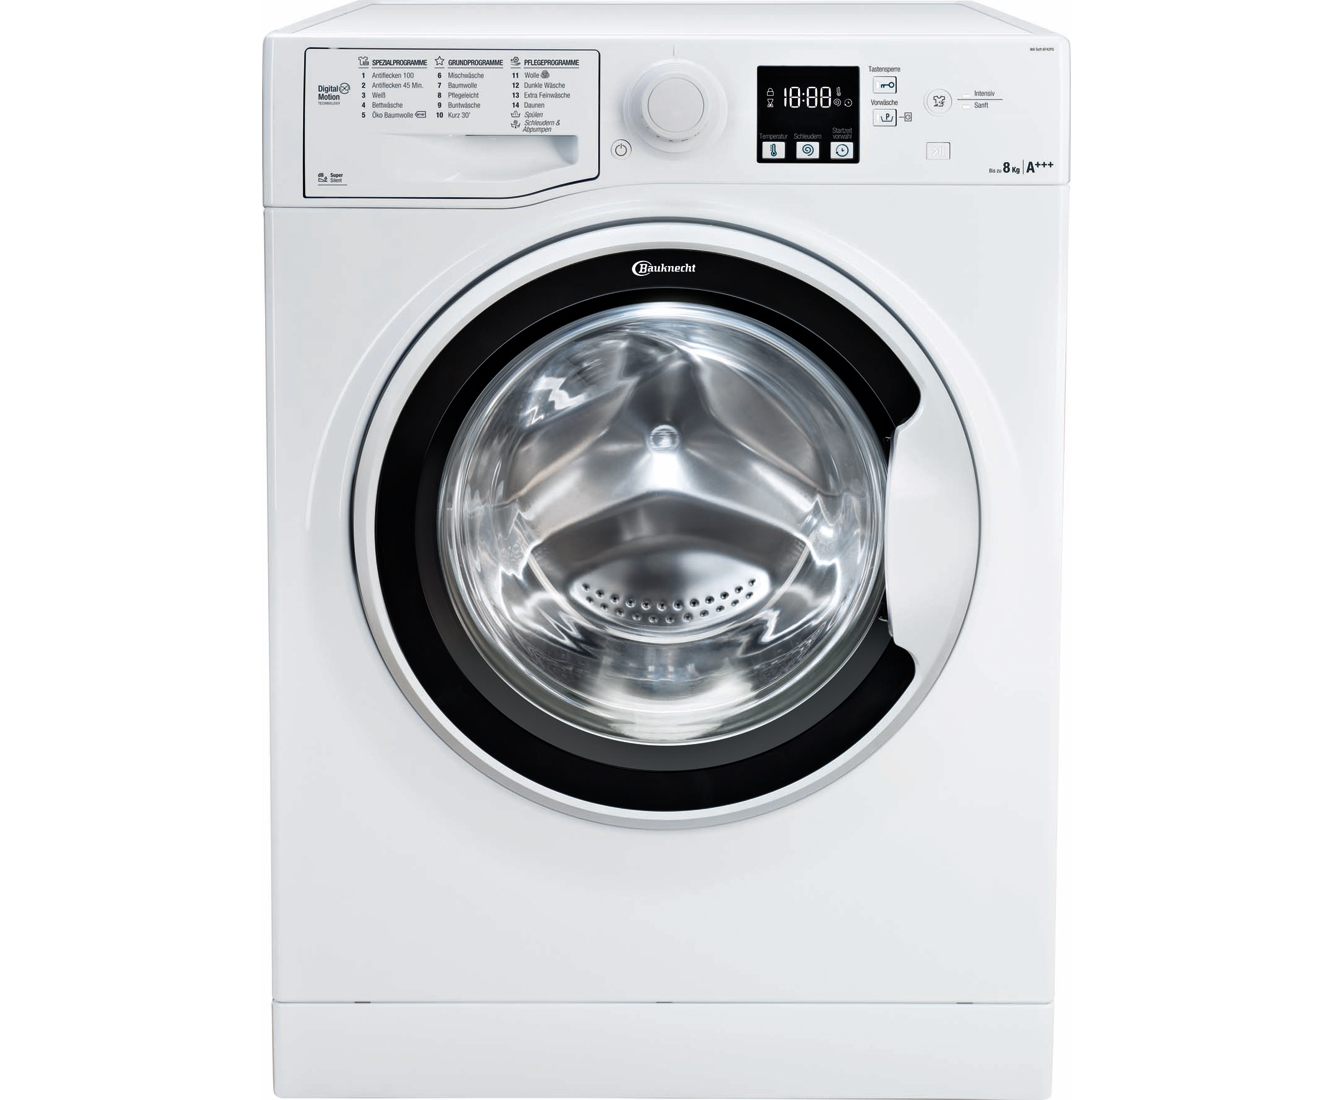 Bauknecht WA Soft 8F42PS 8 kg Waschmaschine für nur 325,- Euro inkl. Versand